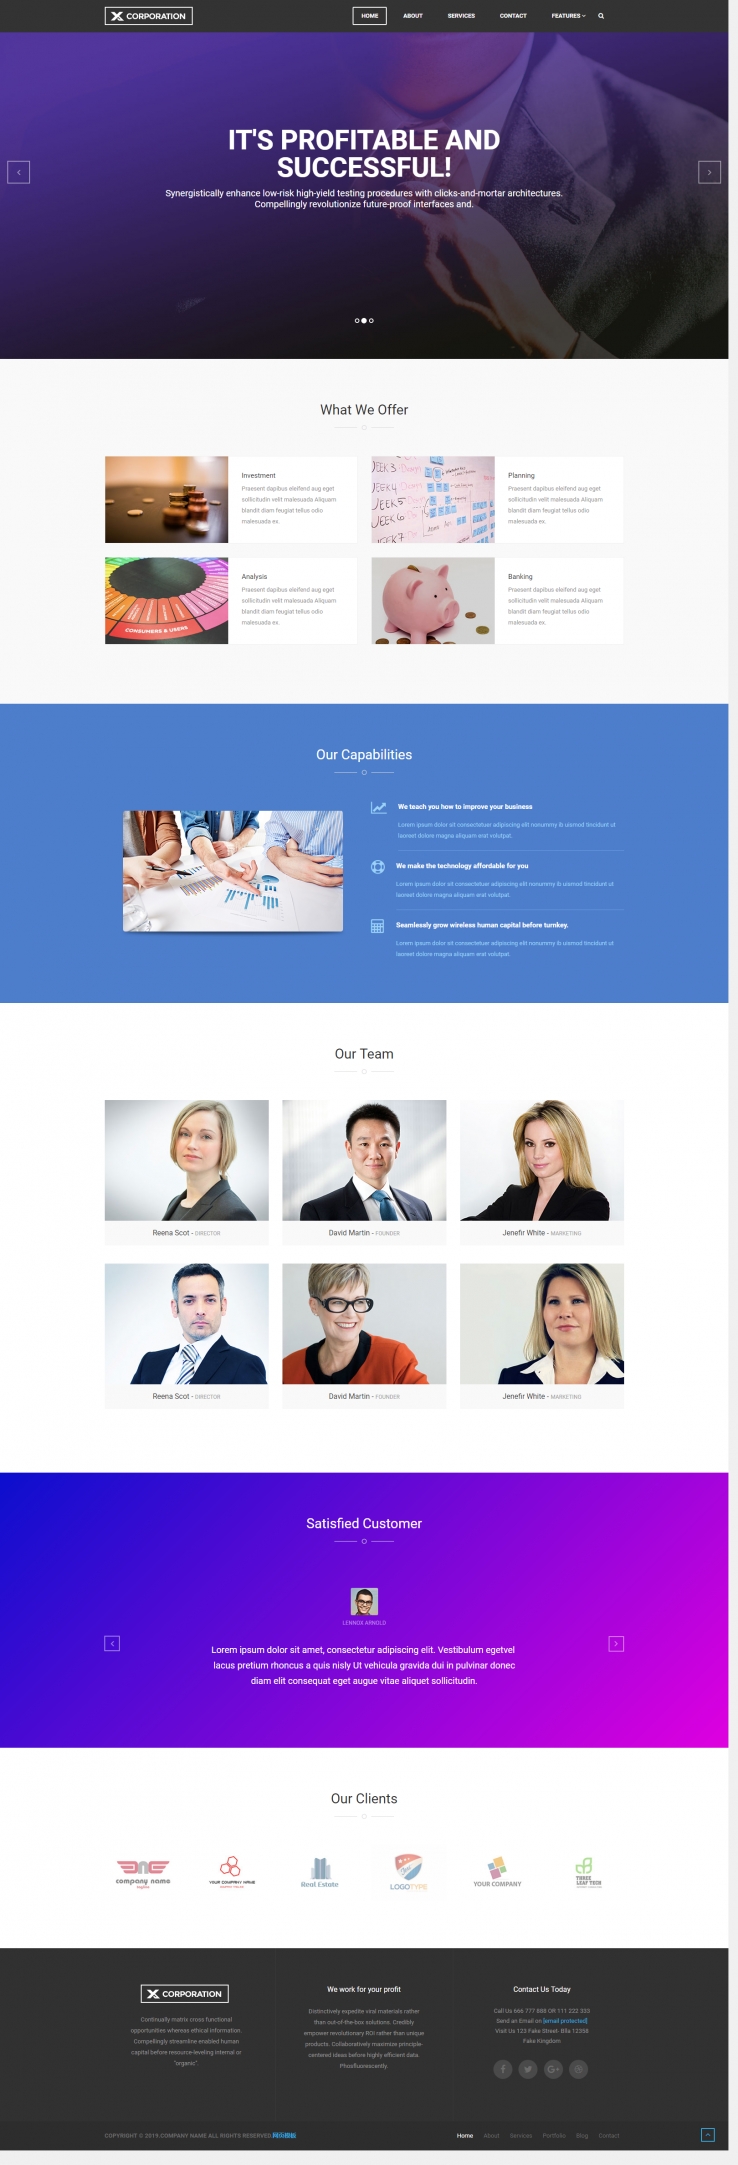 蓝色欧美风格的商业金融服务整站网站源码下载